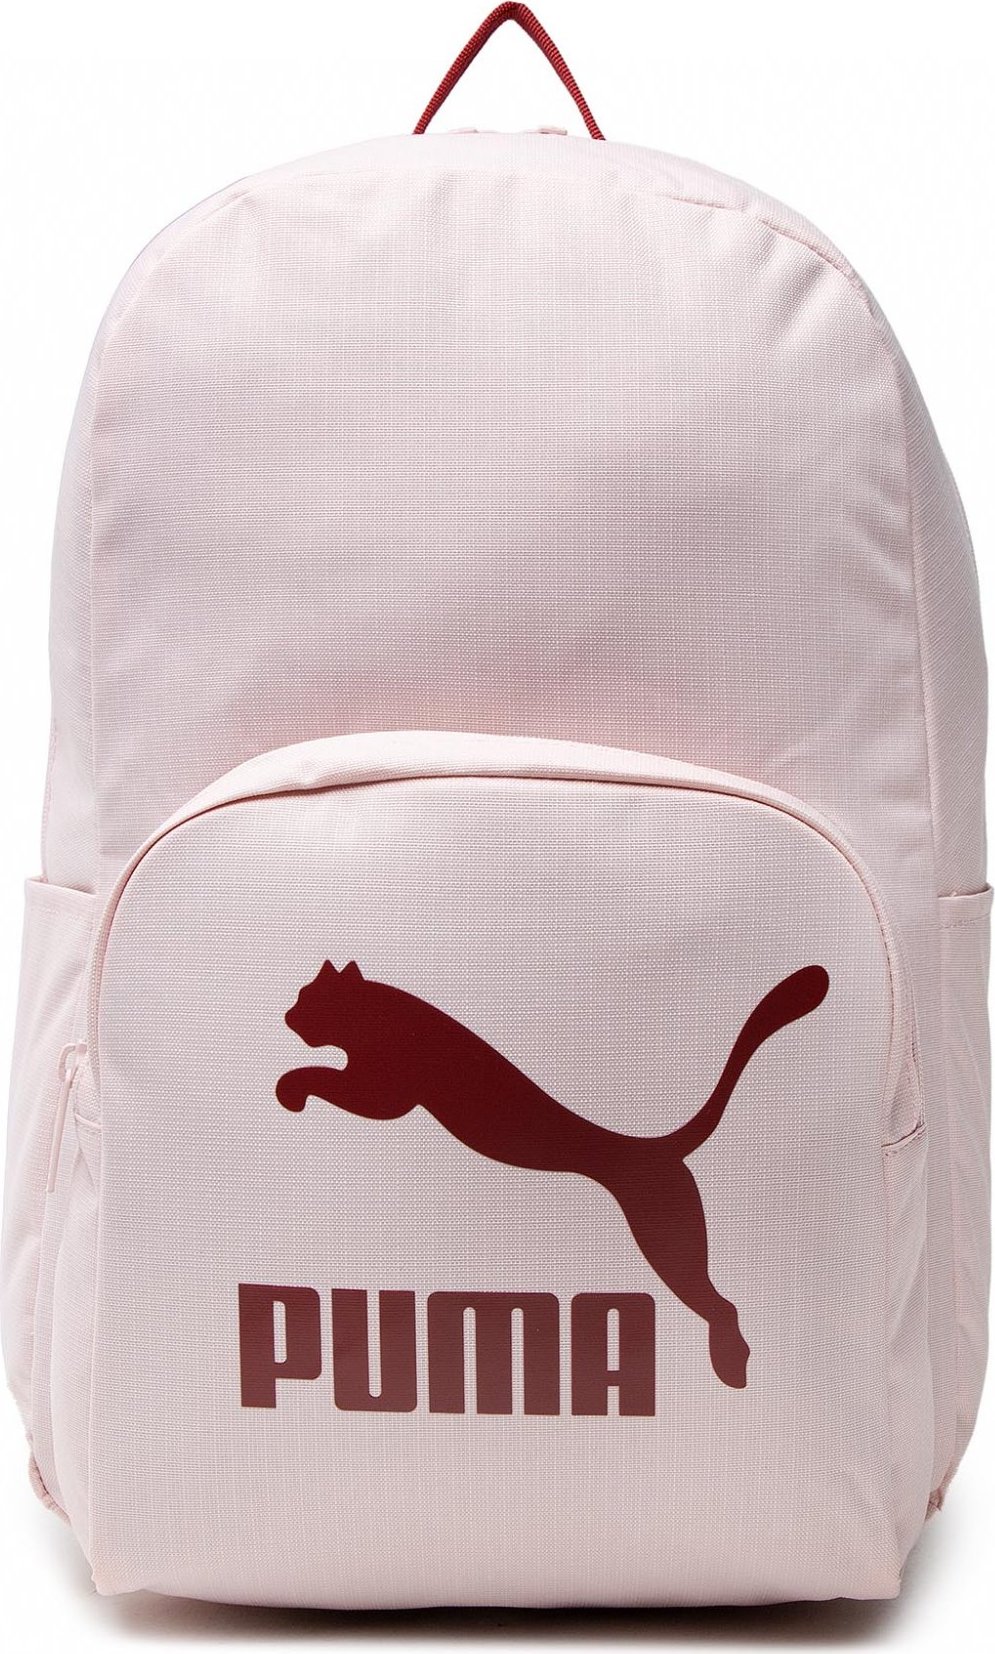 Puma Originals Urban Backpack 078480 02